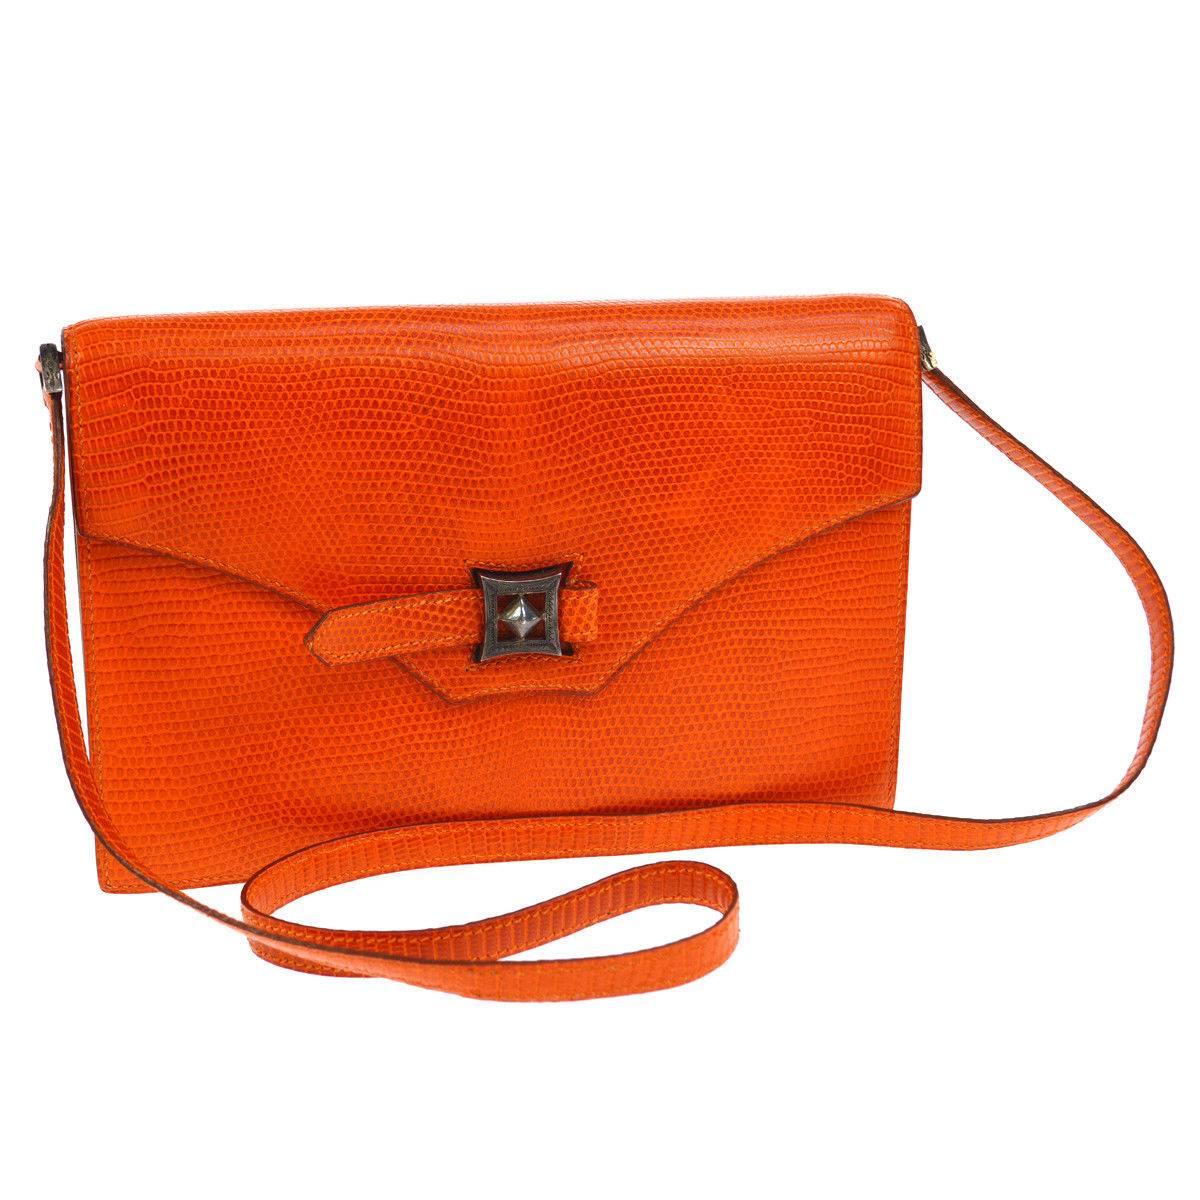 Hermes Limited Edition Lizard Leather Envelope Evening Clutch Shoulder Flap Bag